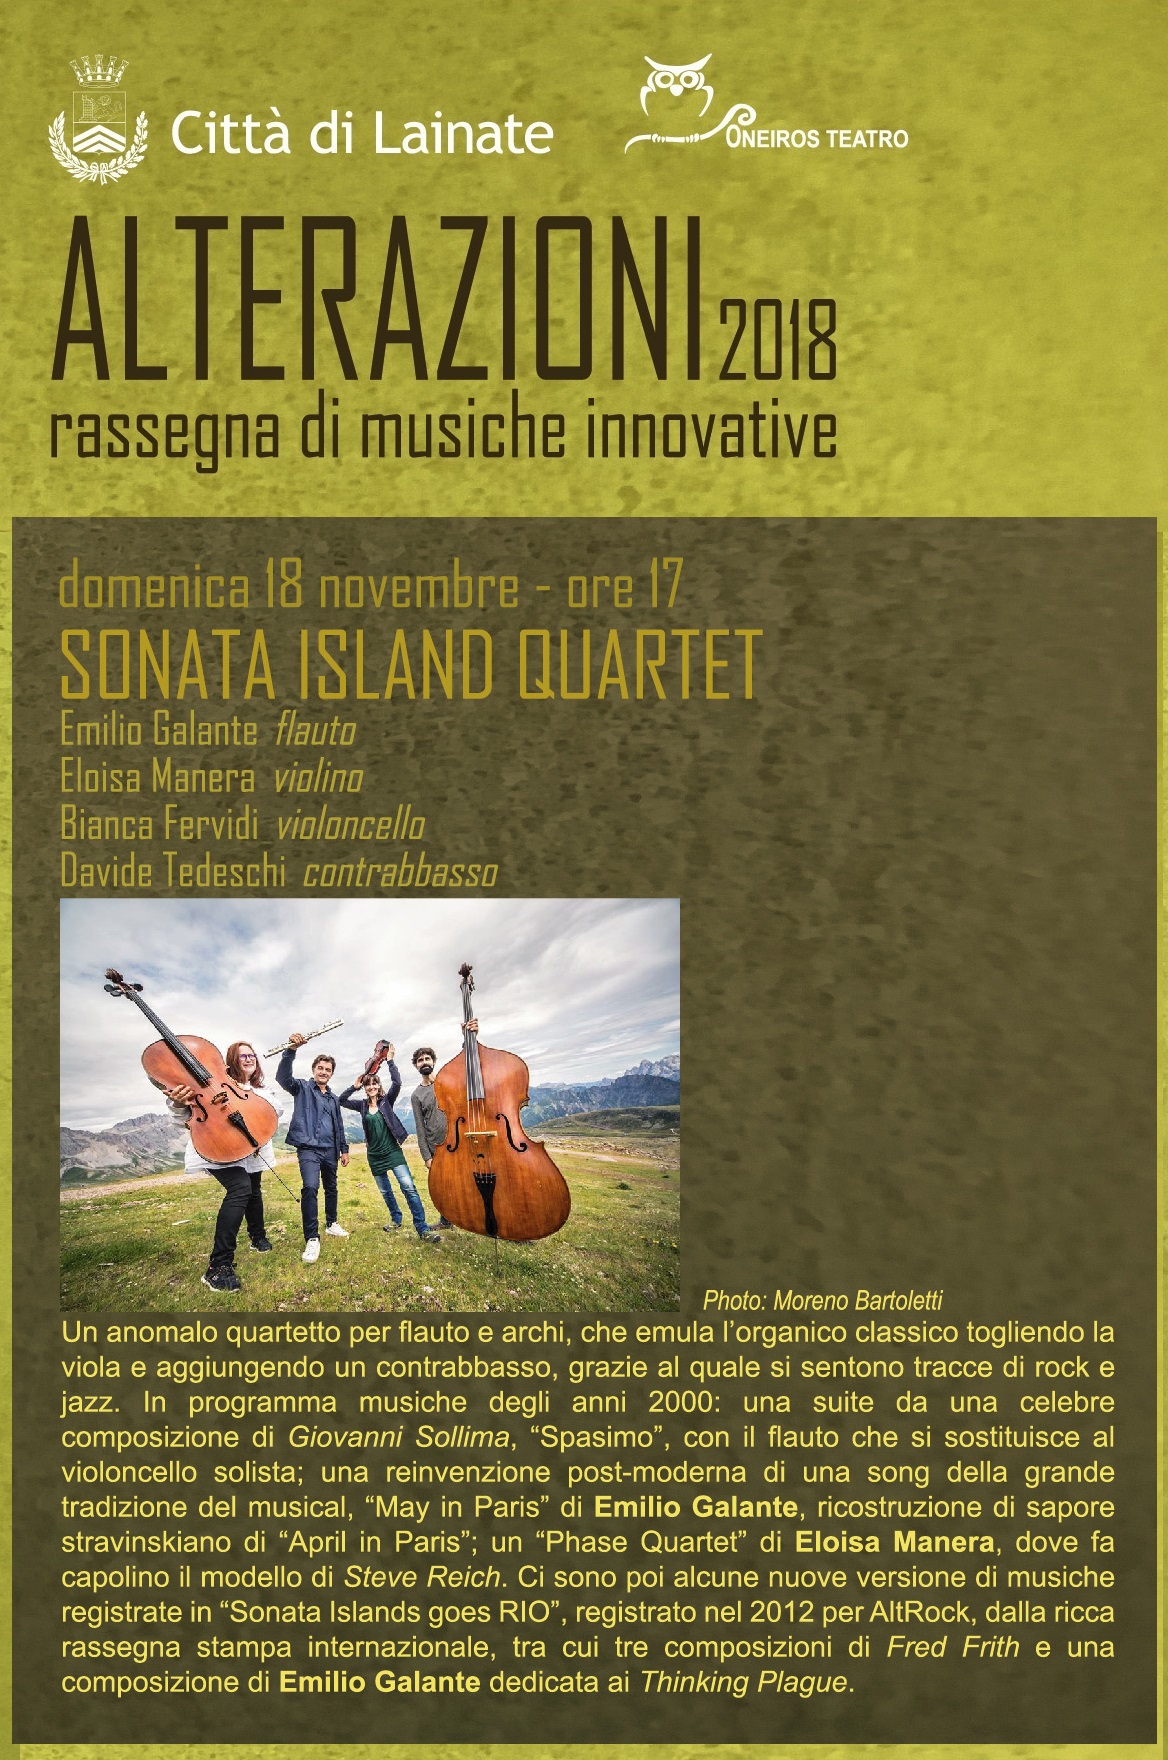 Alterazioni 2018: Sonata Islands Quartet 